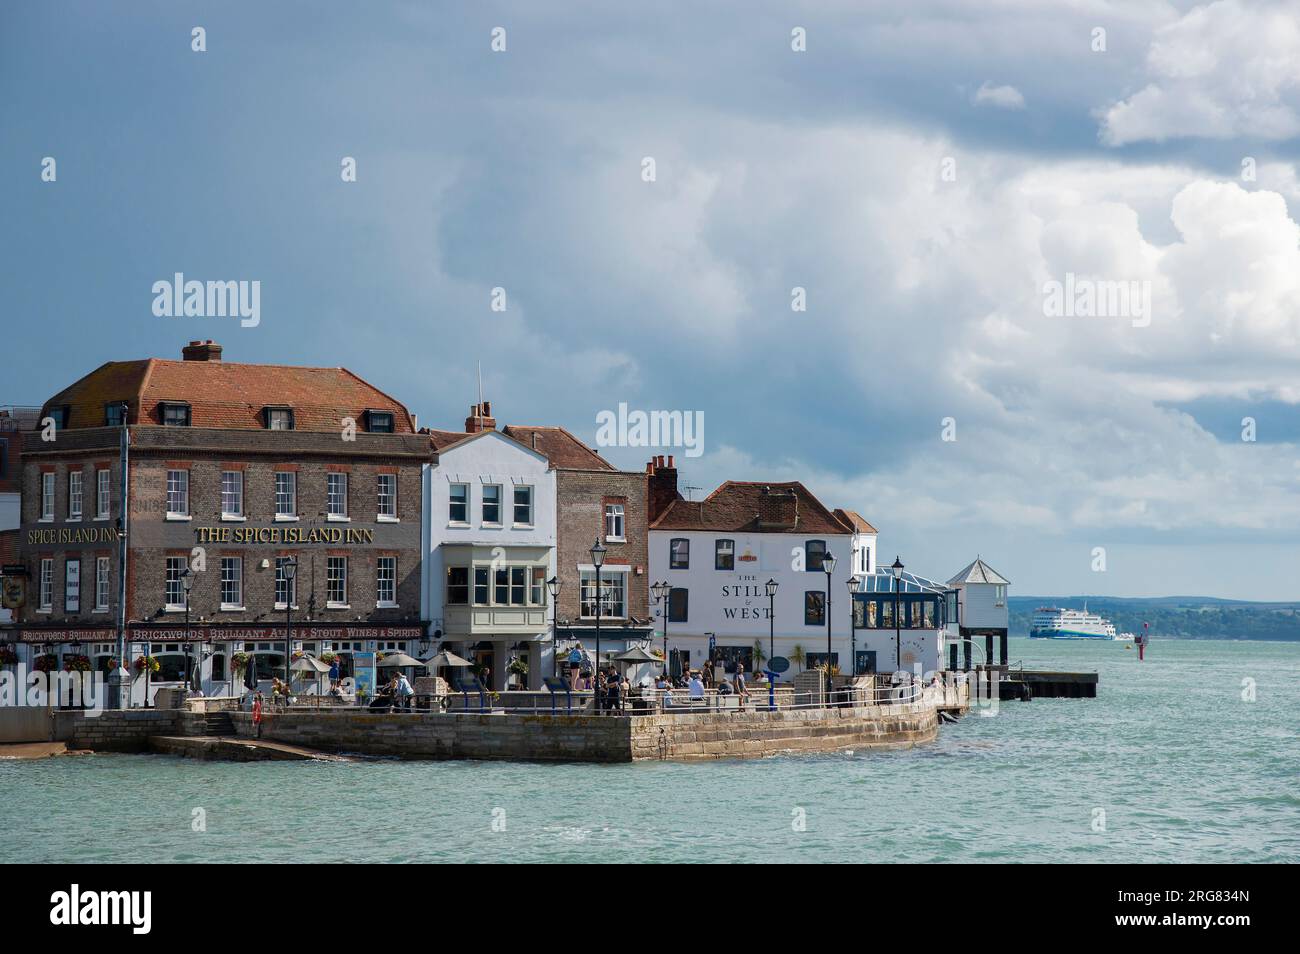 Deux célèbres pubs historiques en bord de mer à Old Portsmouth à l'entrée du port de Portsmouth avec l'île de Wight au loin, Hamphire, Angleterre, Royaume-Uni Banque D'Images